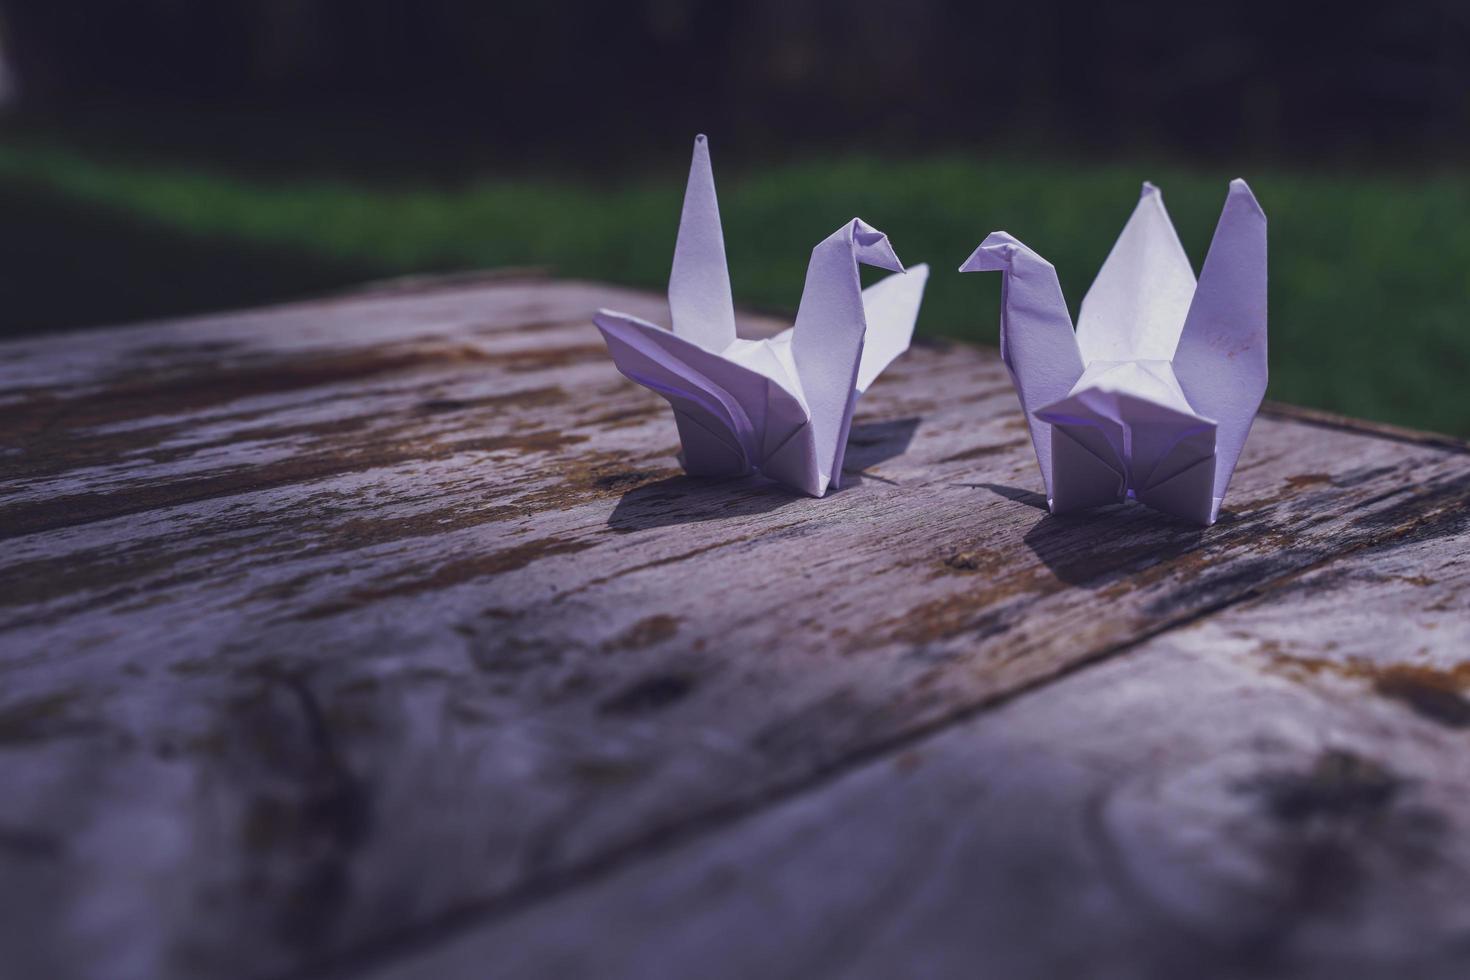 acredita-se que o pássaro origami seja um pássaro sagrado e um símbolo de longevidade, esperança, boa sorte e paz foto